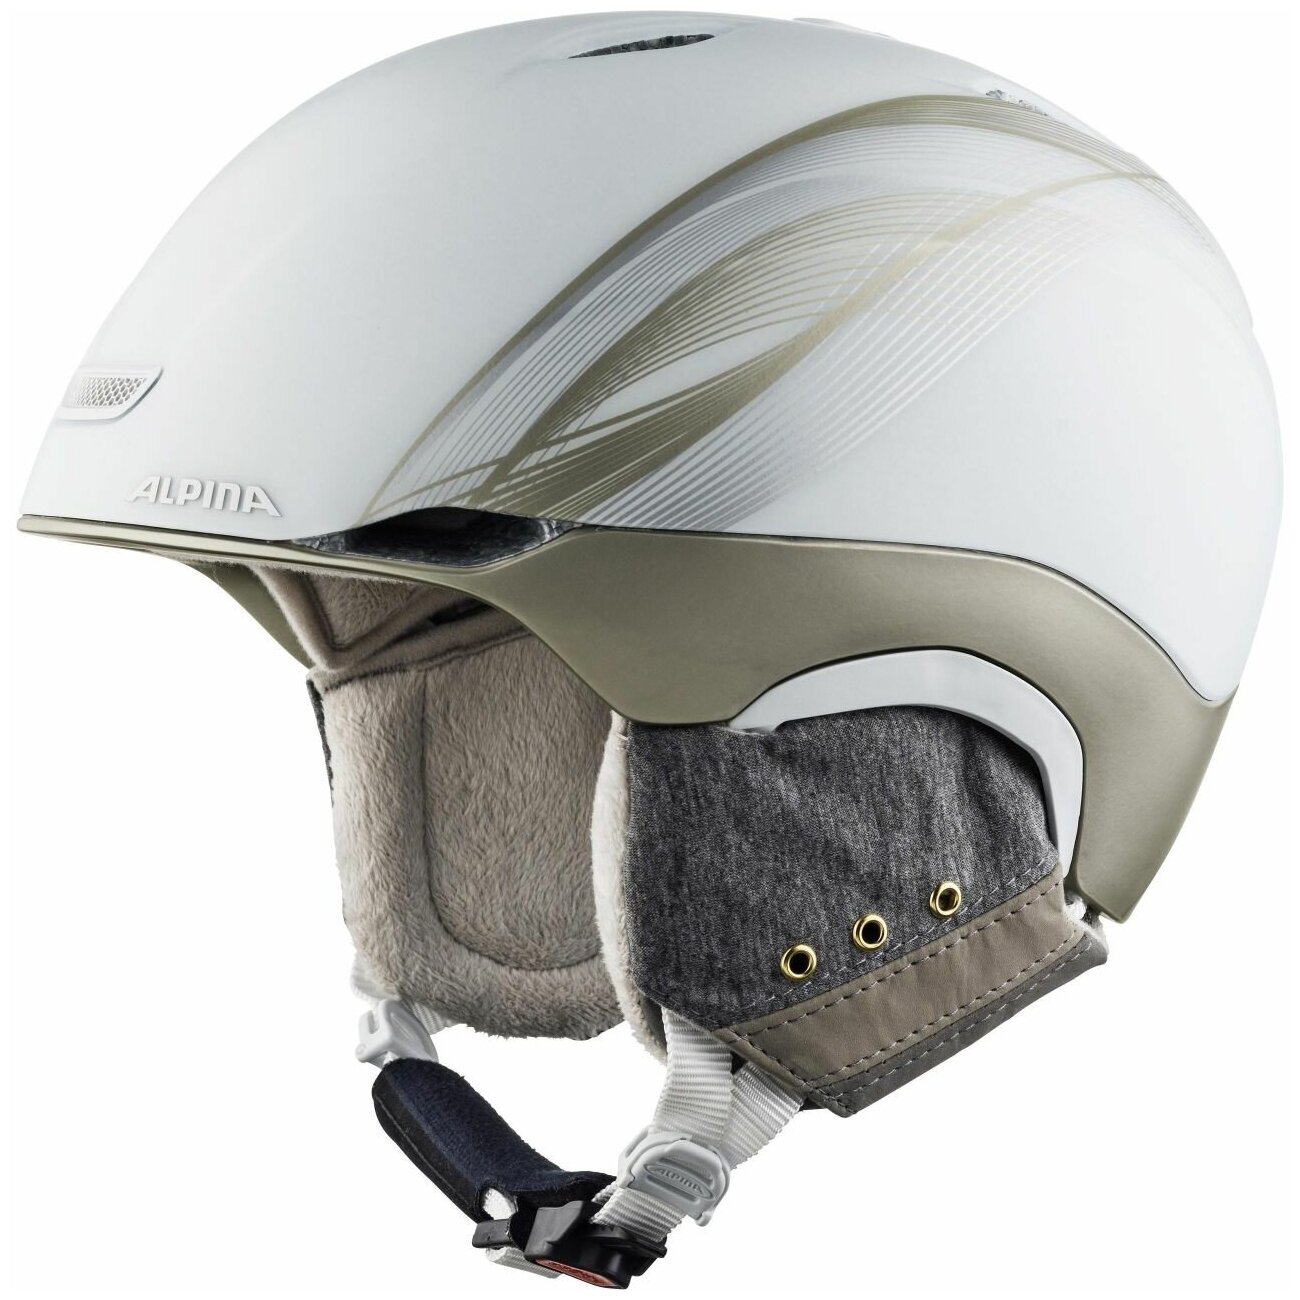 Зимний Шлем Alpina Parsena White-Prosecco Matt (см:55-59)